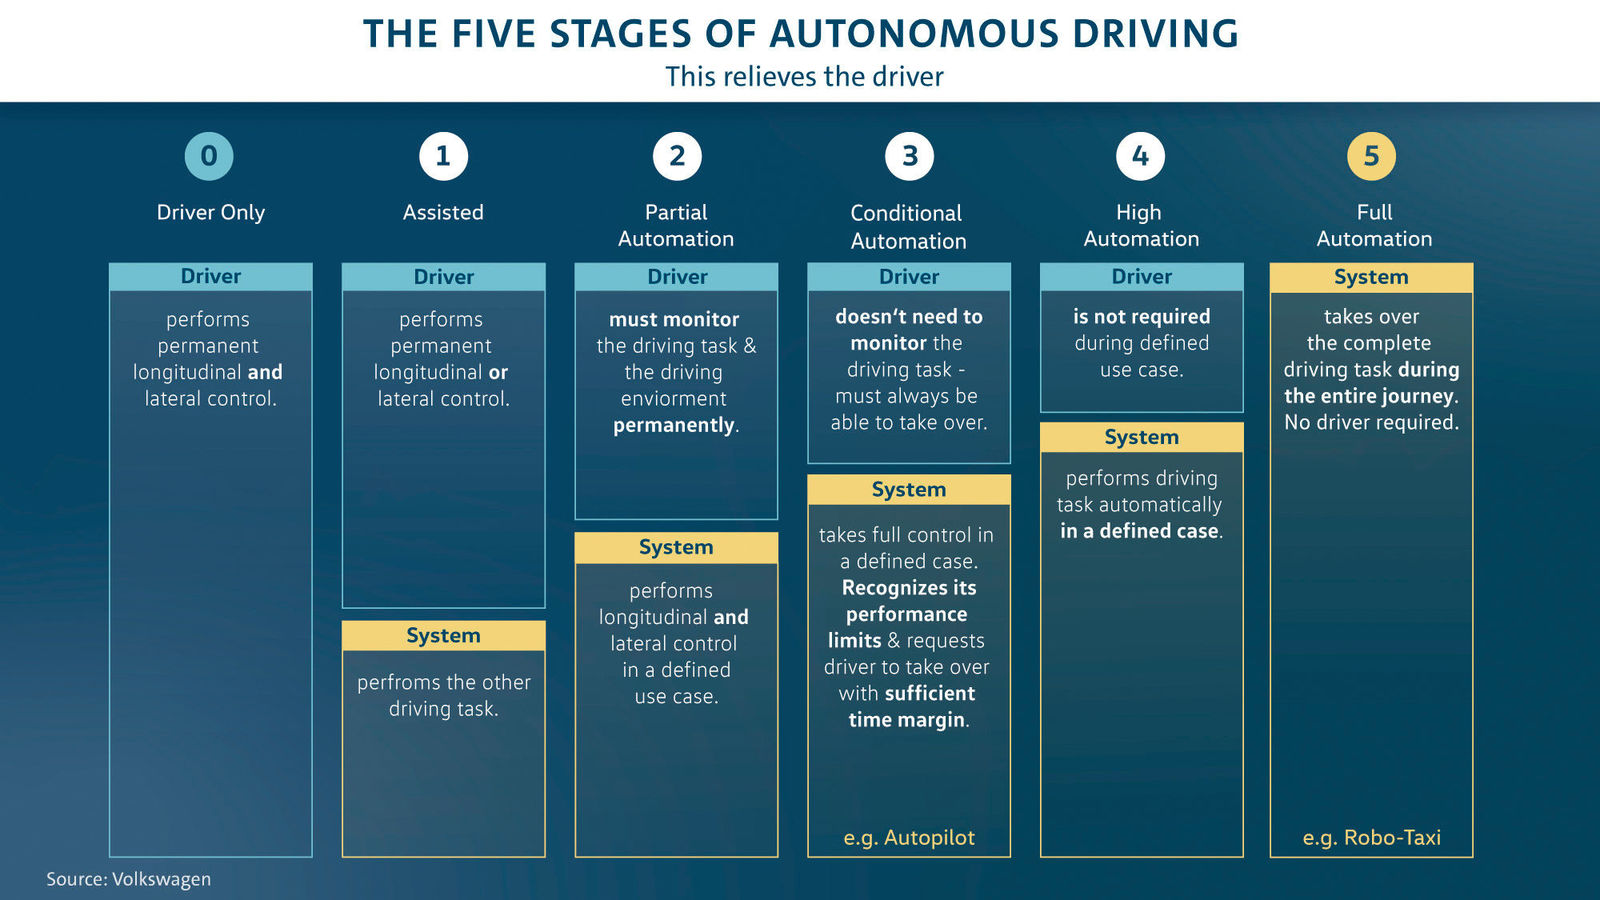 Volkswagen plans to make autonomous driving market-ready